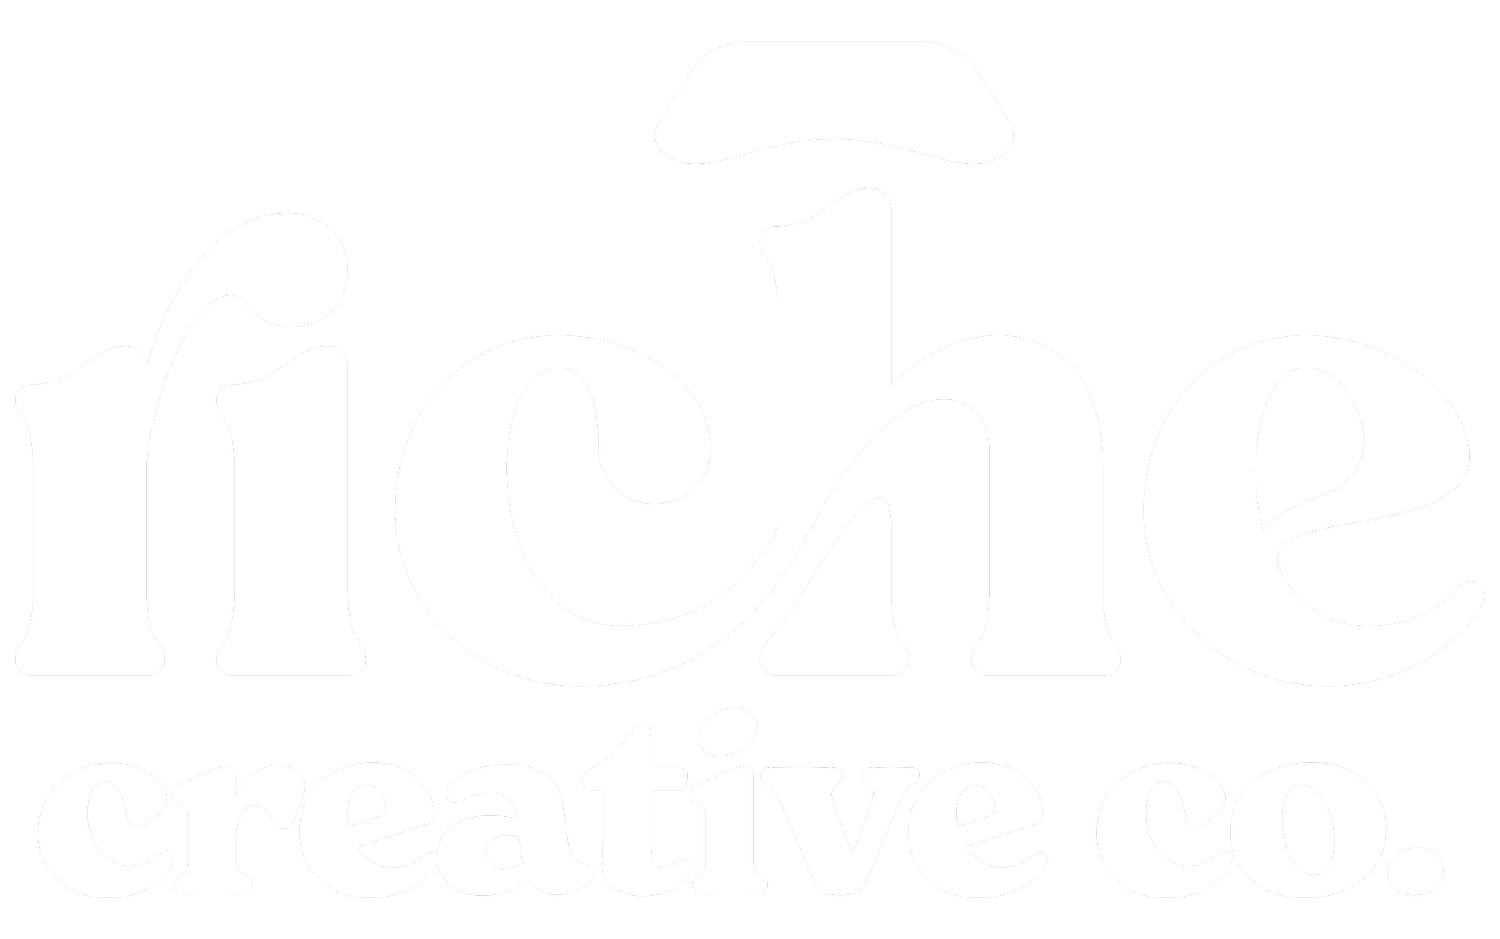 Riche Creative Co.